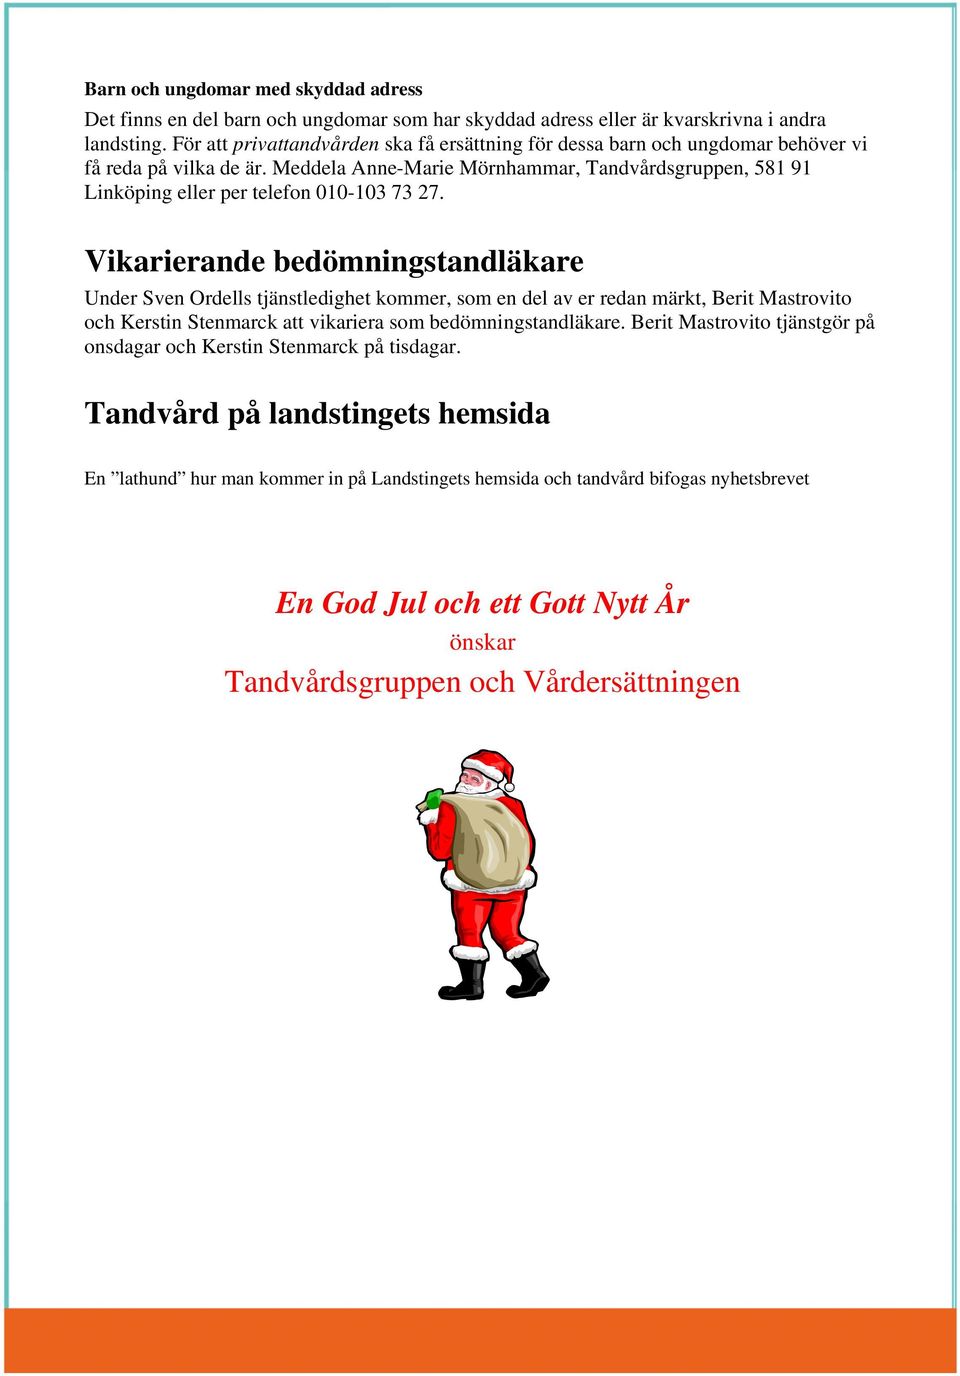 Meddela Anne-Marie Mörnhammar, Tandvårdsgruppen, 581 91 Linköping eller per telefon 010-103 73 27.